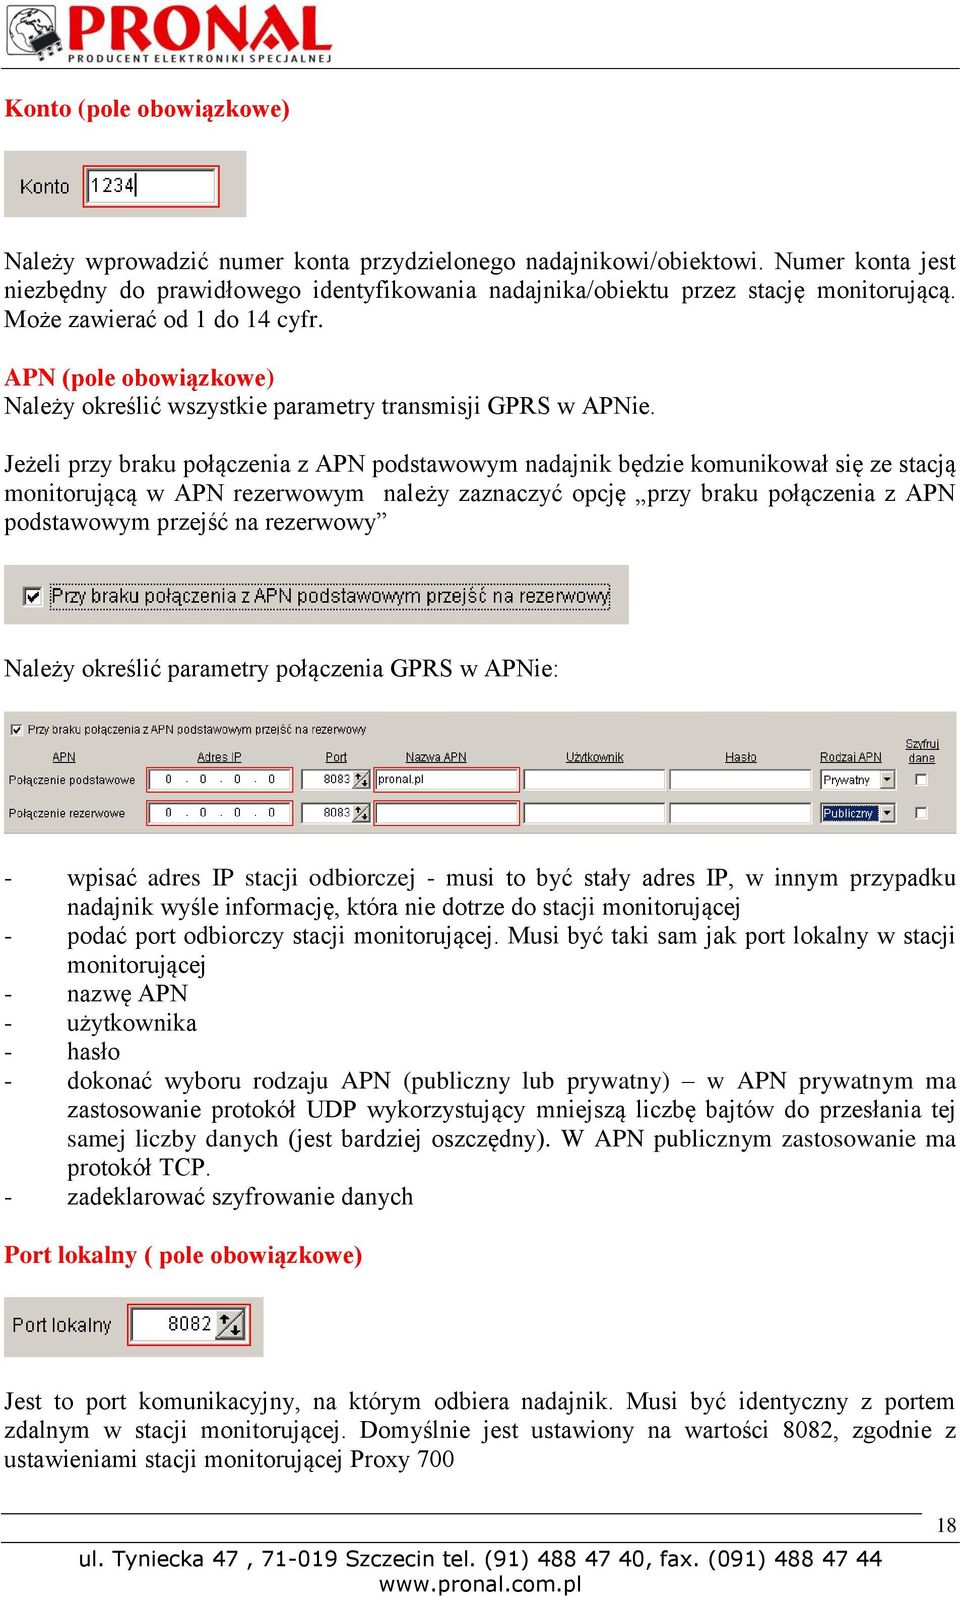 Jeżeli przy braku połączenia z APN podstawowym nadajnik będzie komunikował się ze stacją monitorującą w APN rezerwowym należy zaznaczyć opcję przy braku połączenia z APN podstawowym przejść na